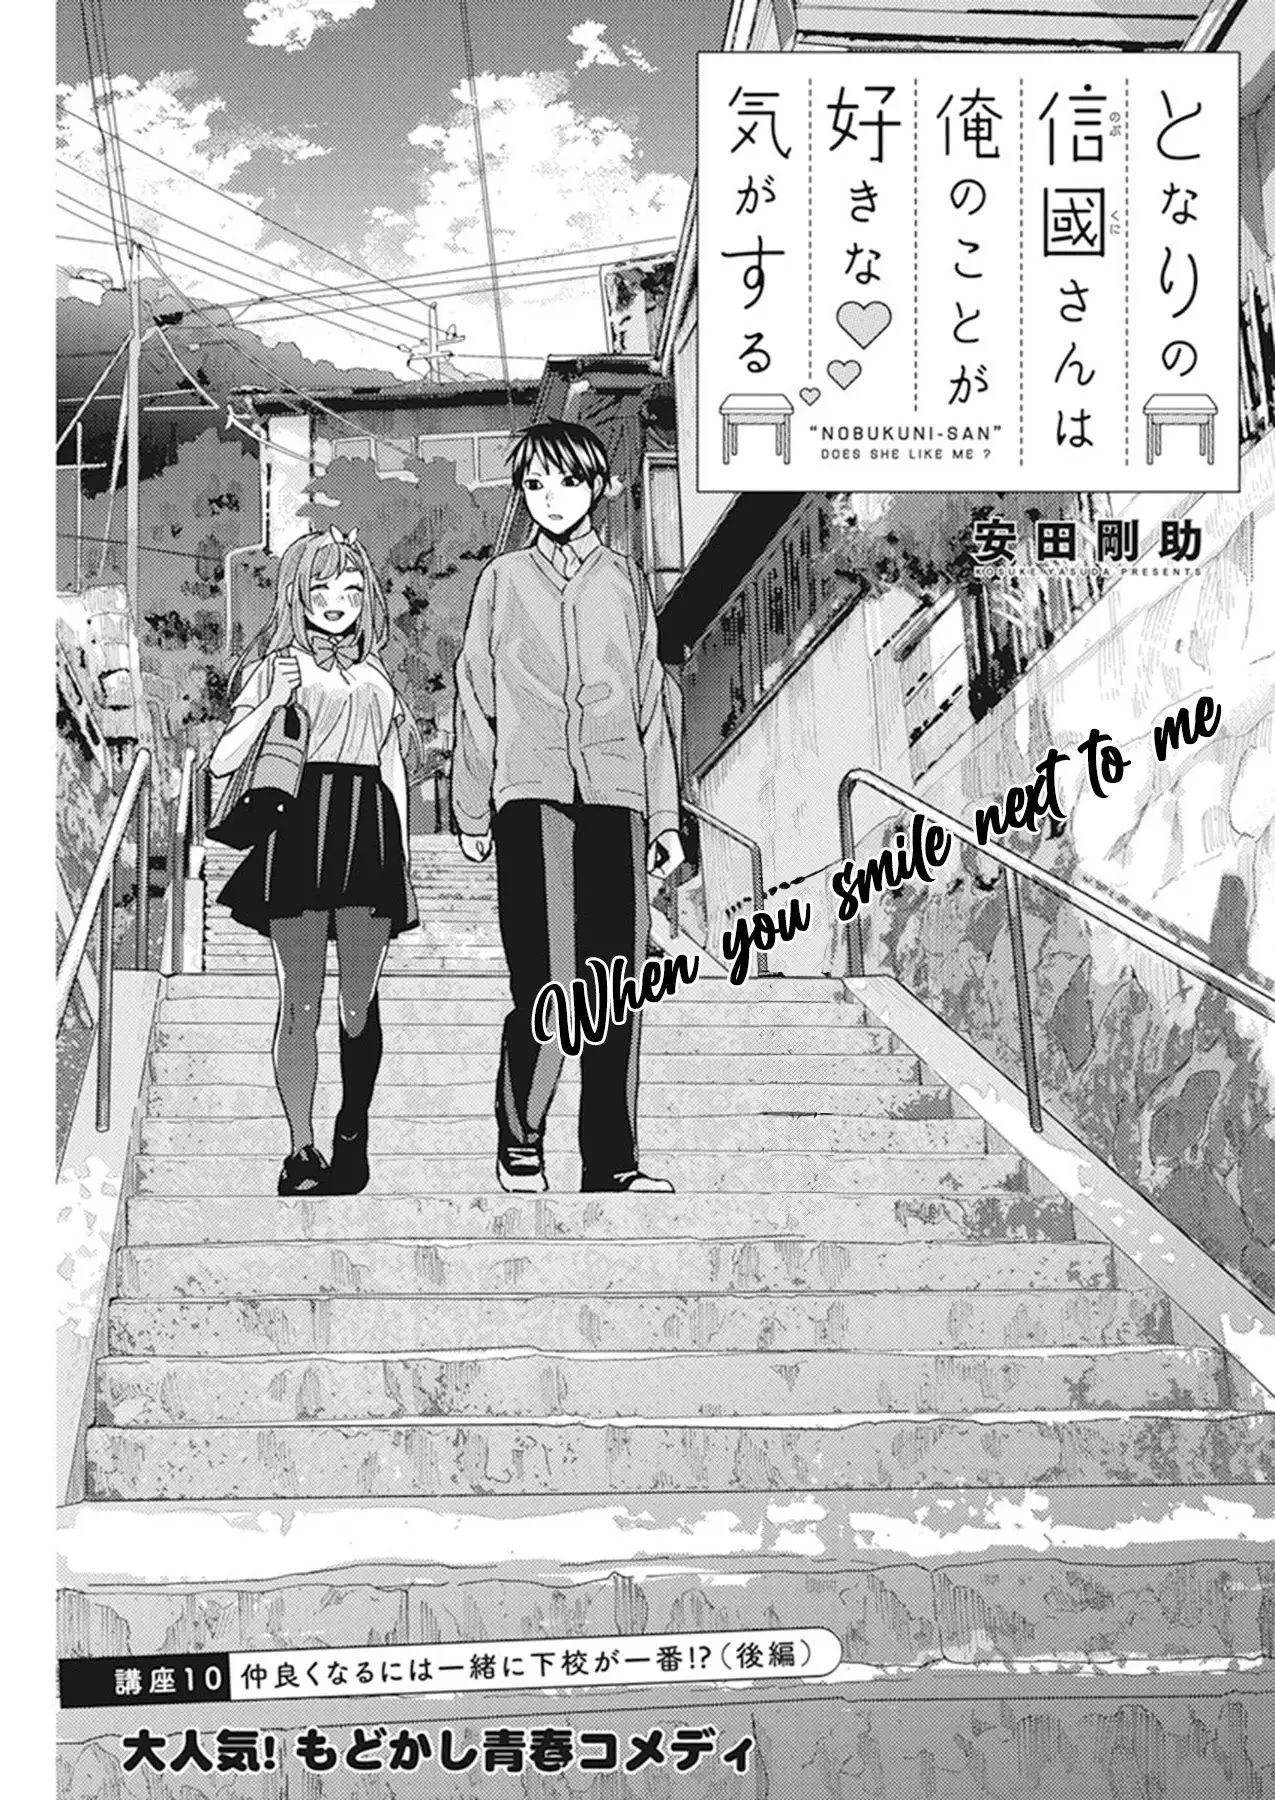 "nobukuni-San" Does She Like Me? - 10 page 3-2ab2a94a